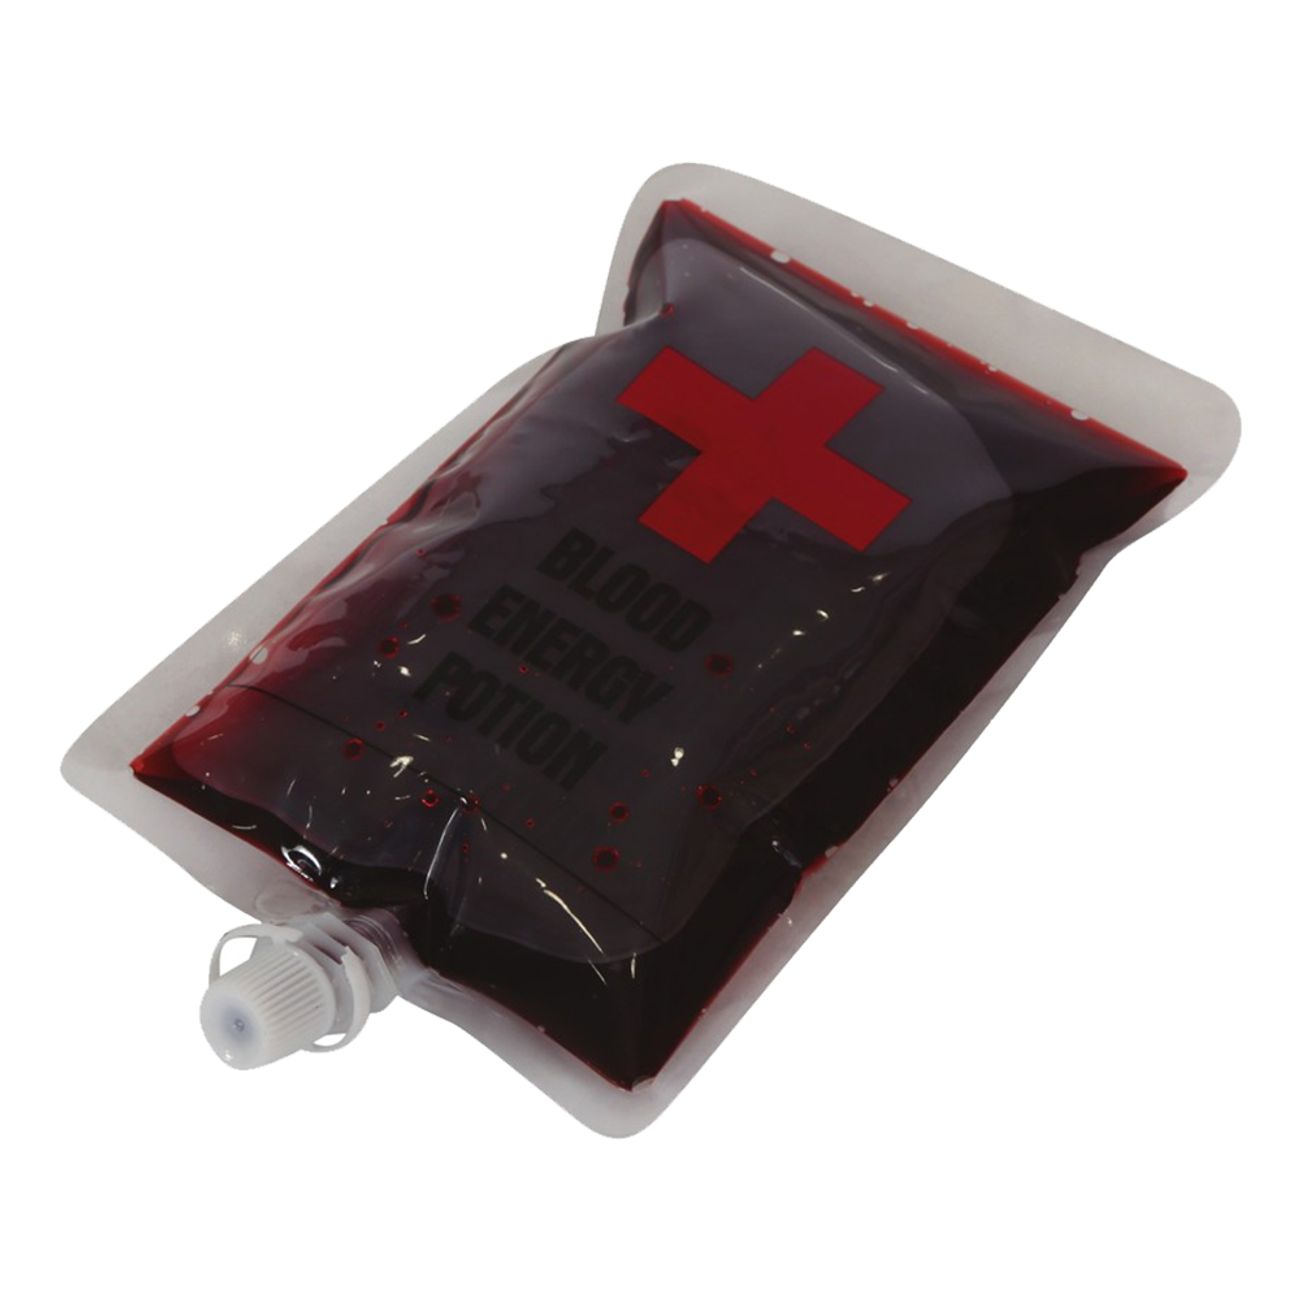 blodpase-med-fejkblod-78250-1